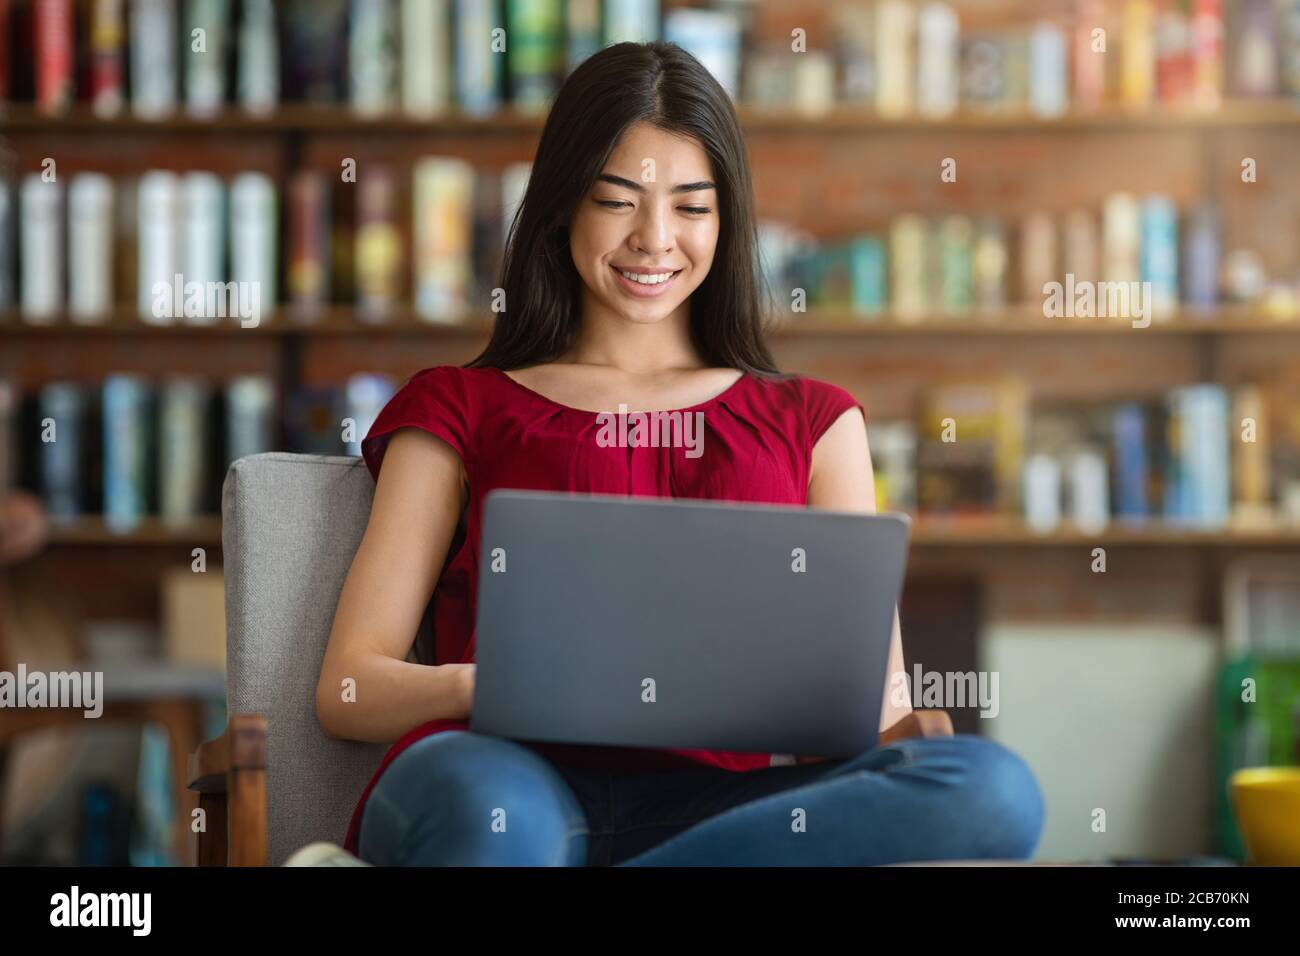 Fille étudiante asiatique souriante se préparant à un examen avec un ordinateur portable à la bibliothèque Banque D'Images